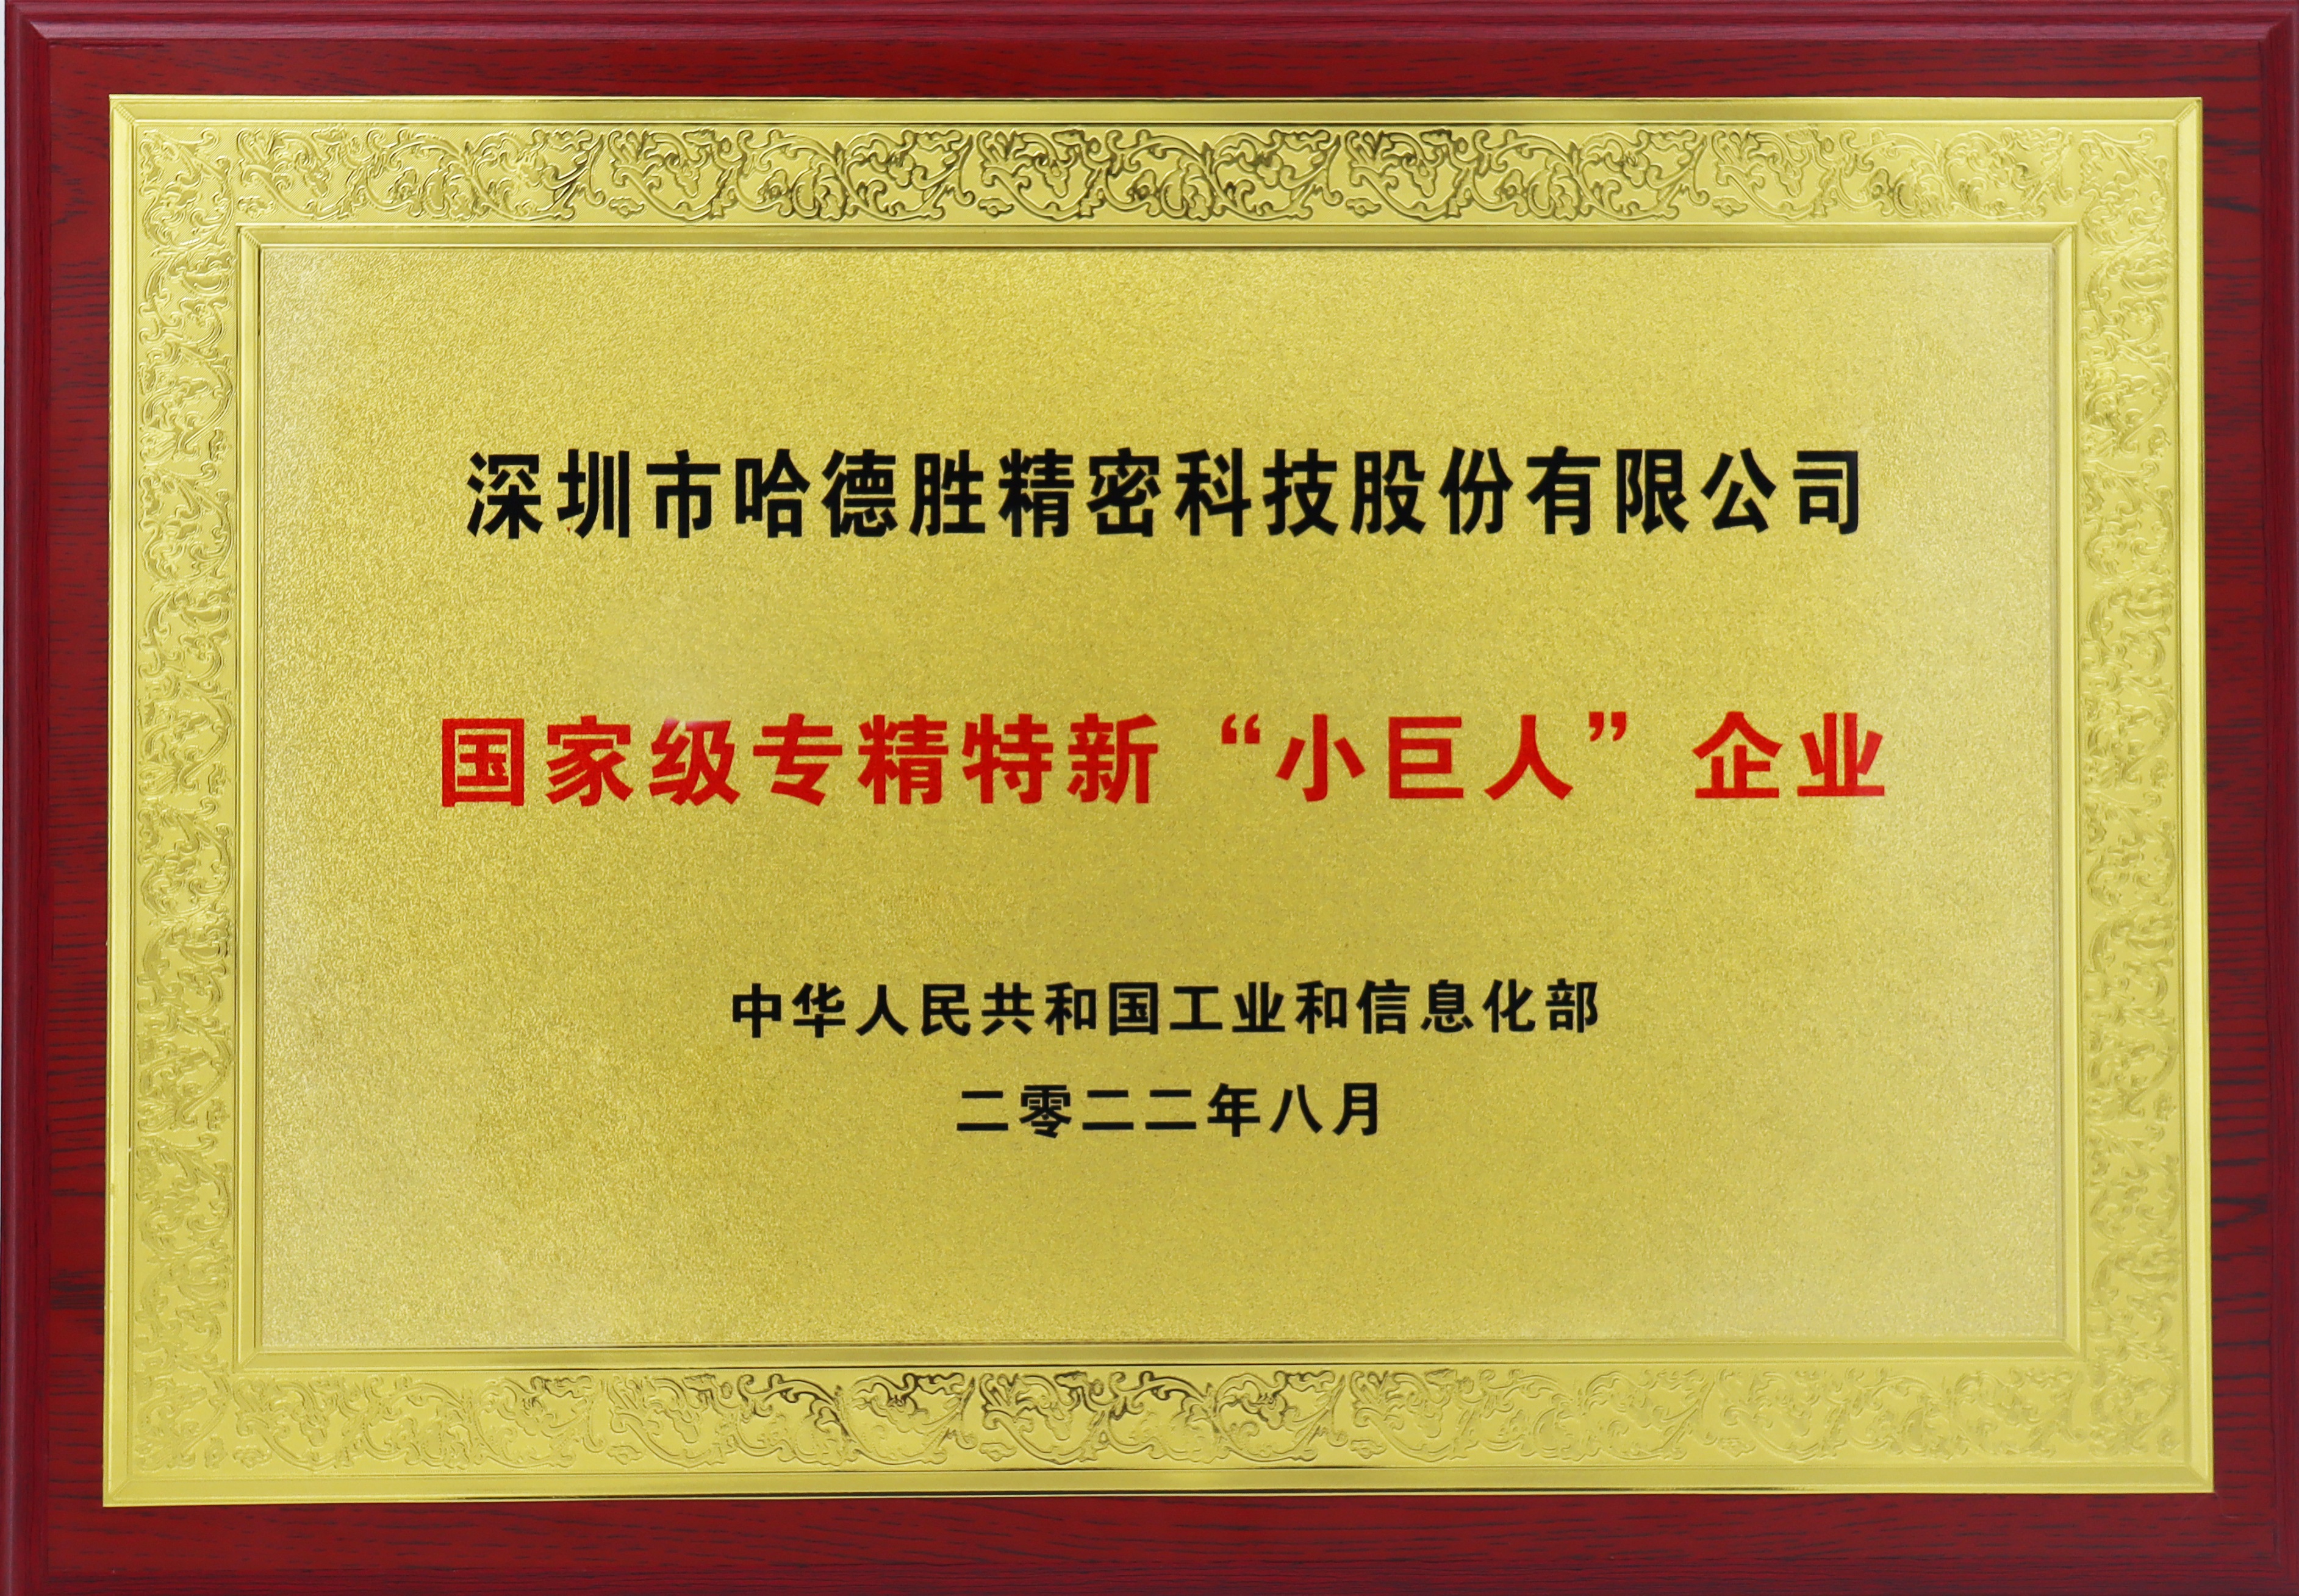 Shenzhen high tech enterprise certificate